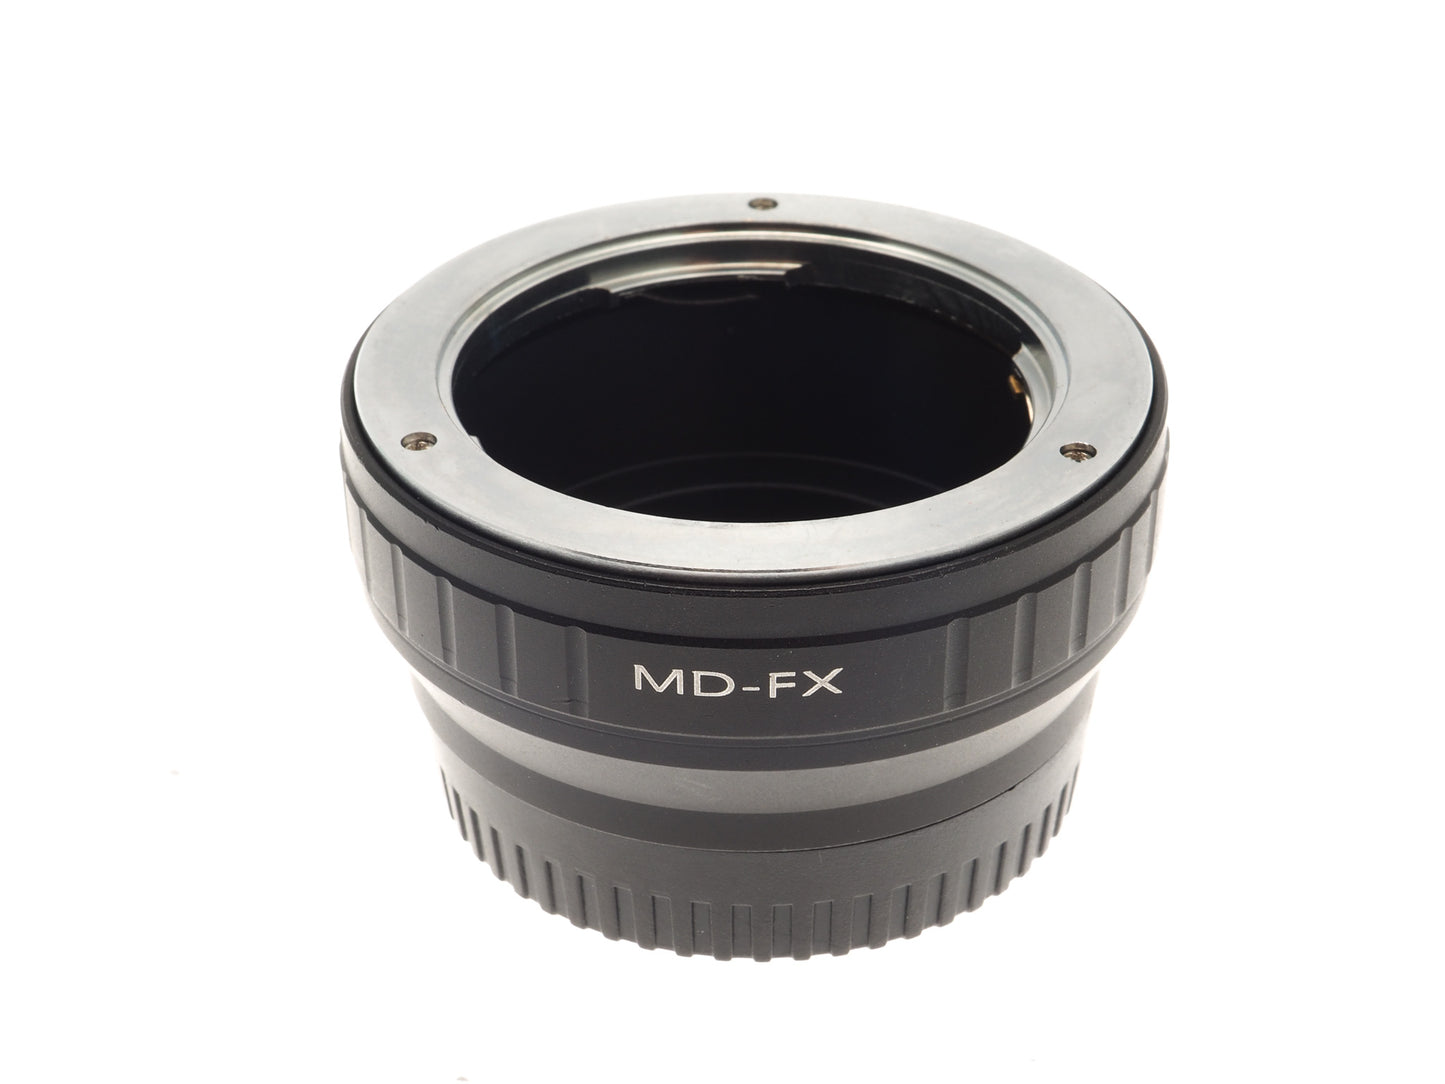 Generic Minolta MD - Fuji FX (MD - FX) Adapter - Lens Adapter